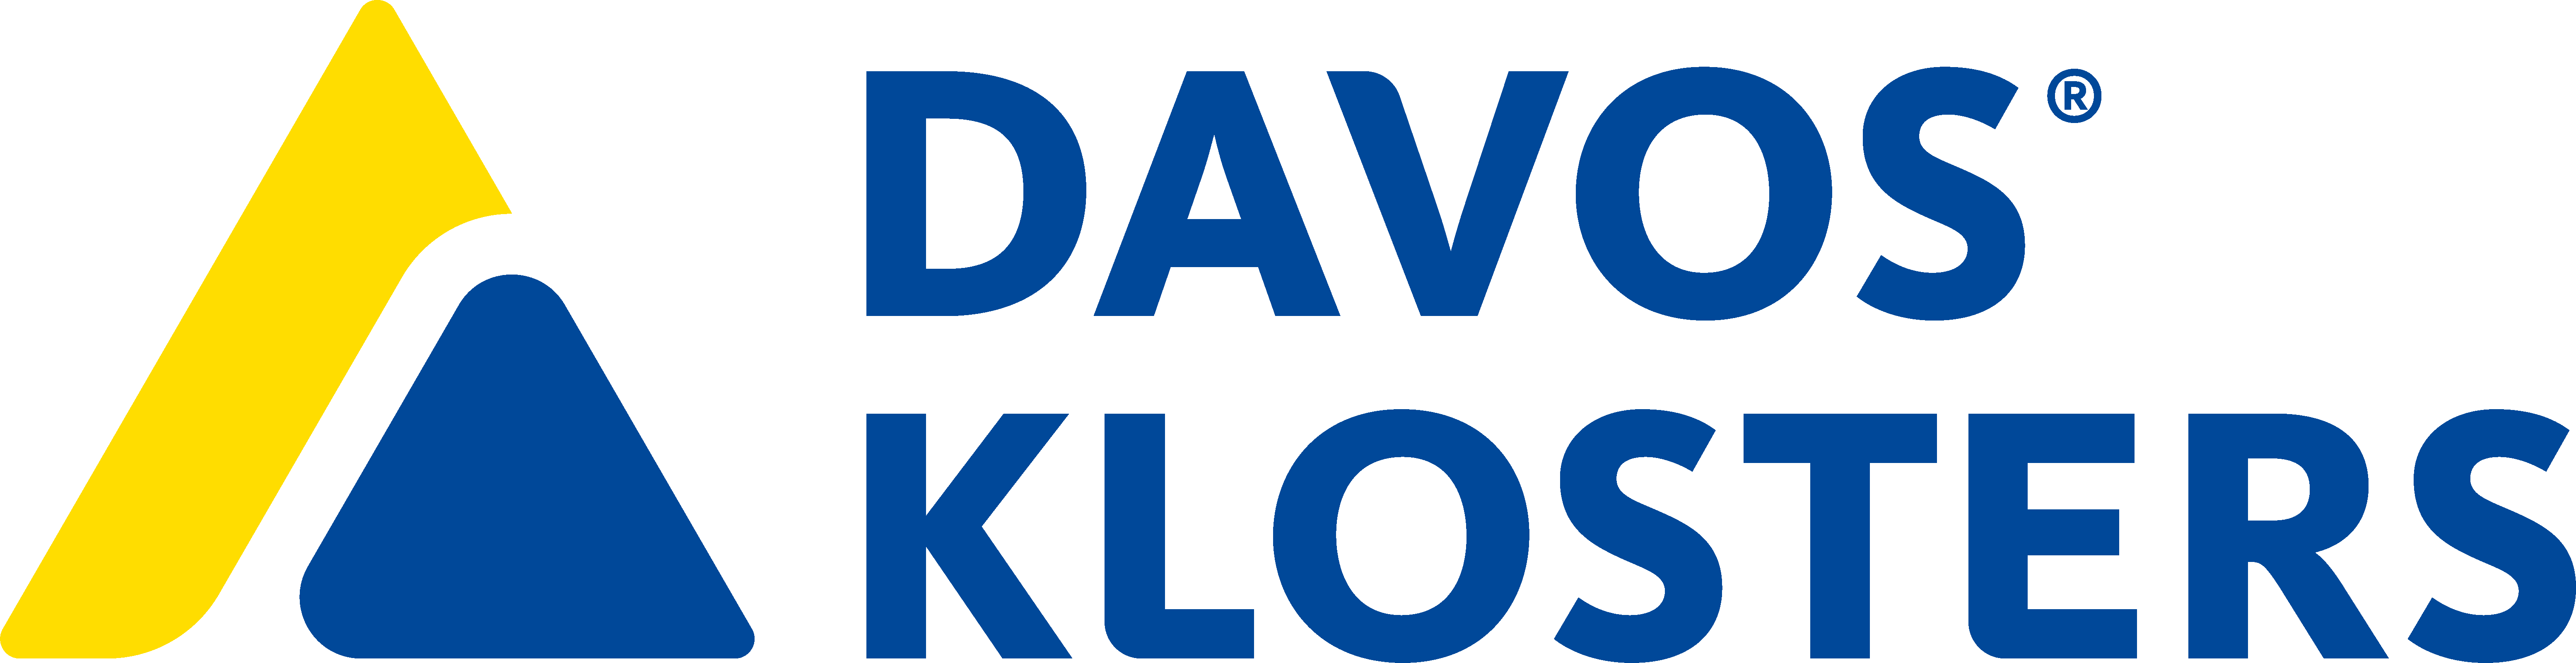 Davos Logo - Swissalpine: Swissalpine Davos